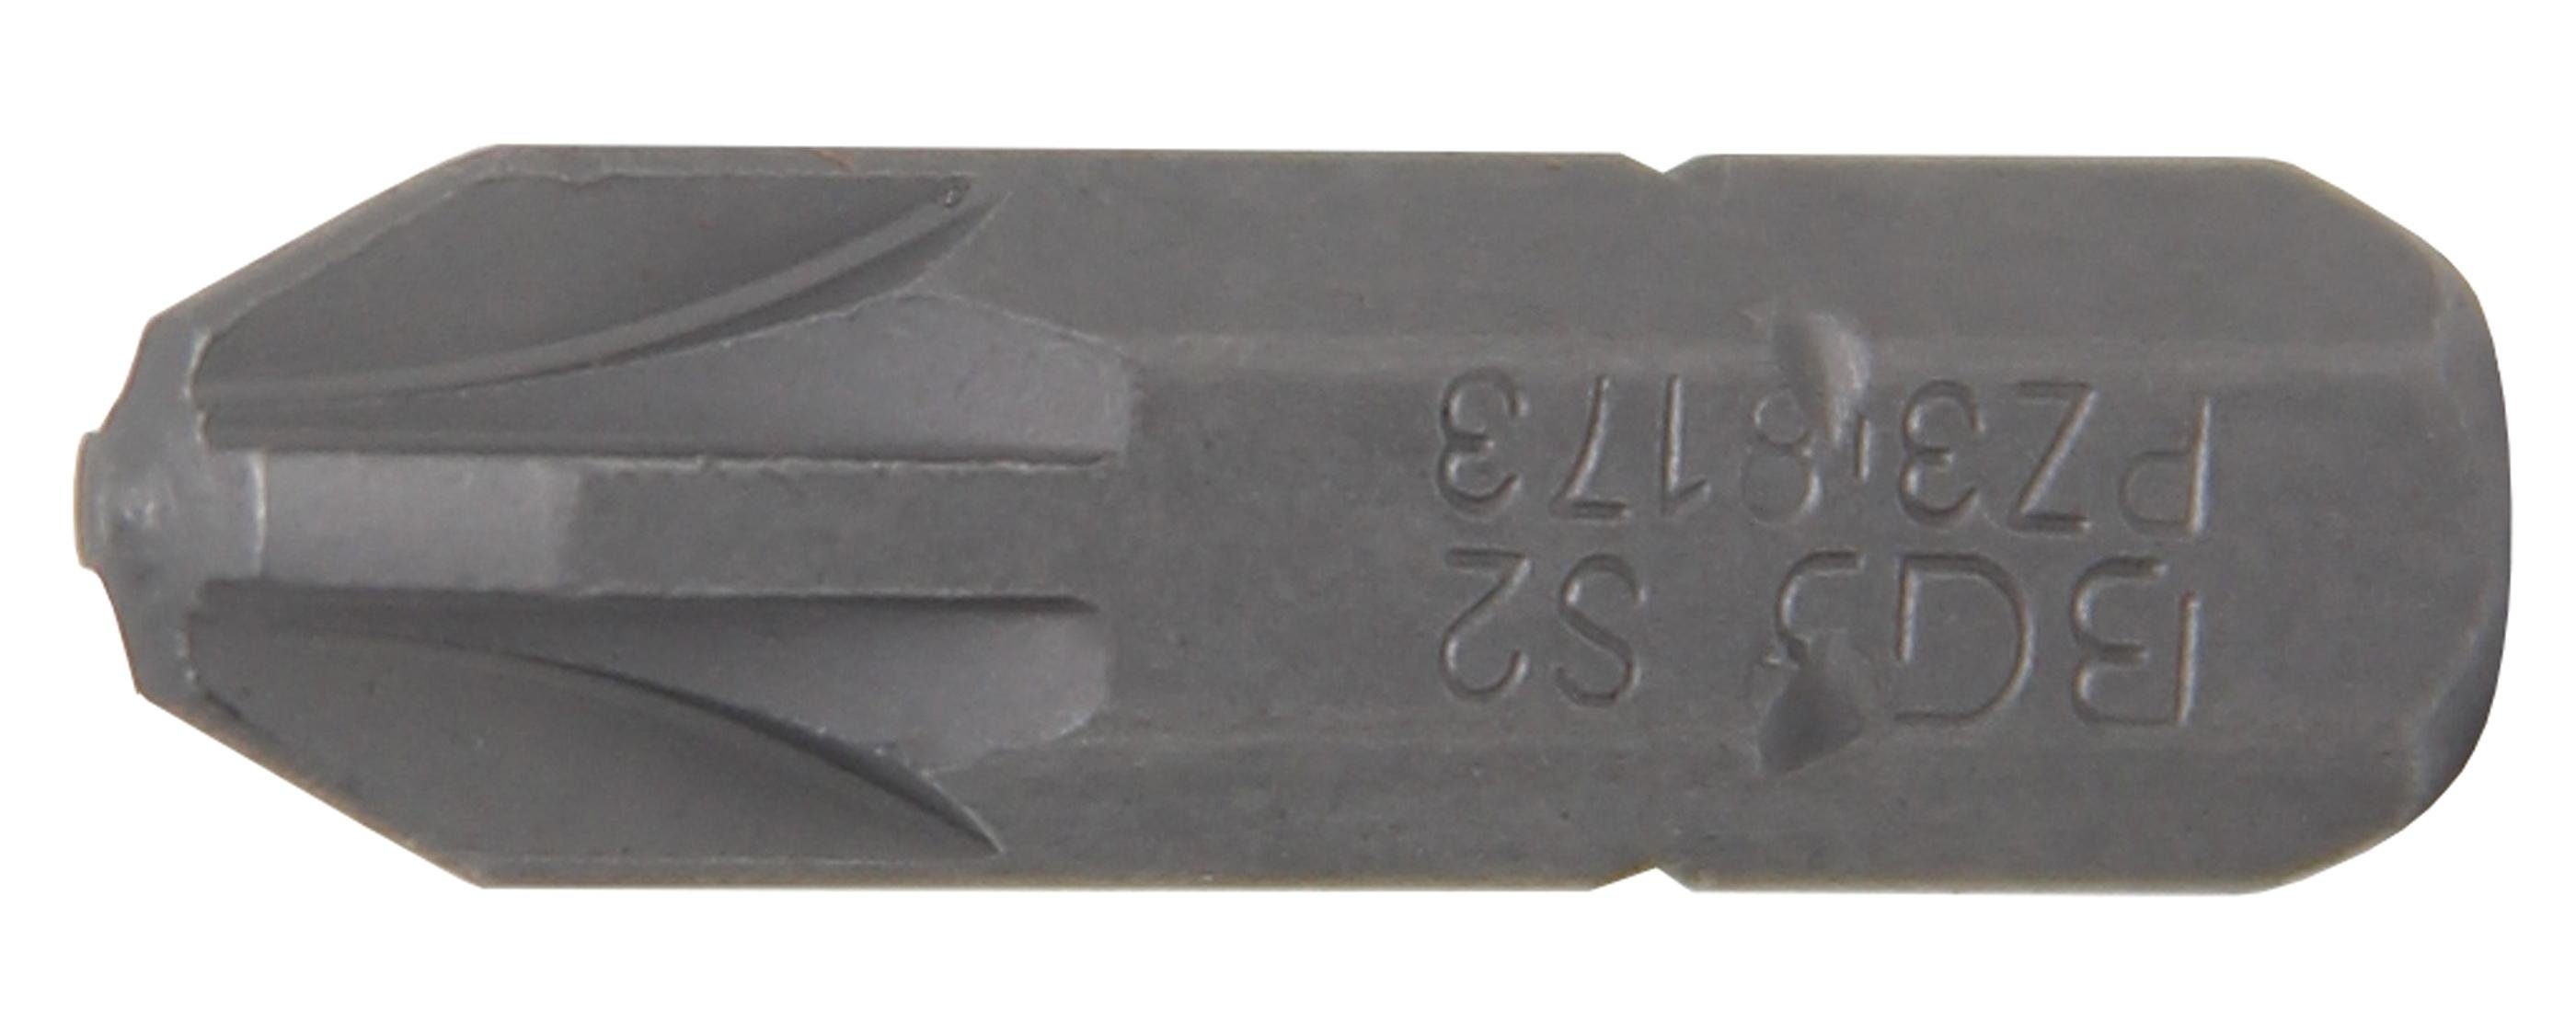 BGS technic Bit-Schraubendreher Bit, Antrieb Außensechskant 6,3 mm (1/4), Kreuzschlitz PZ3